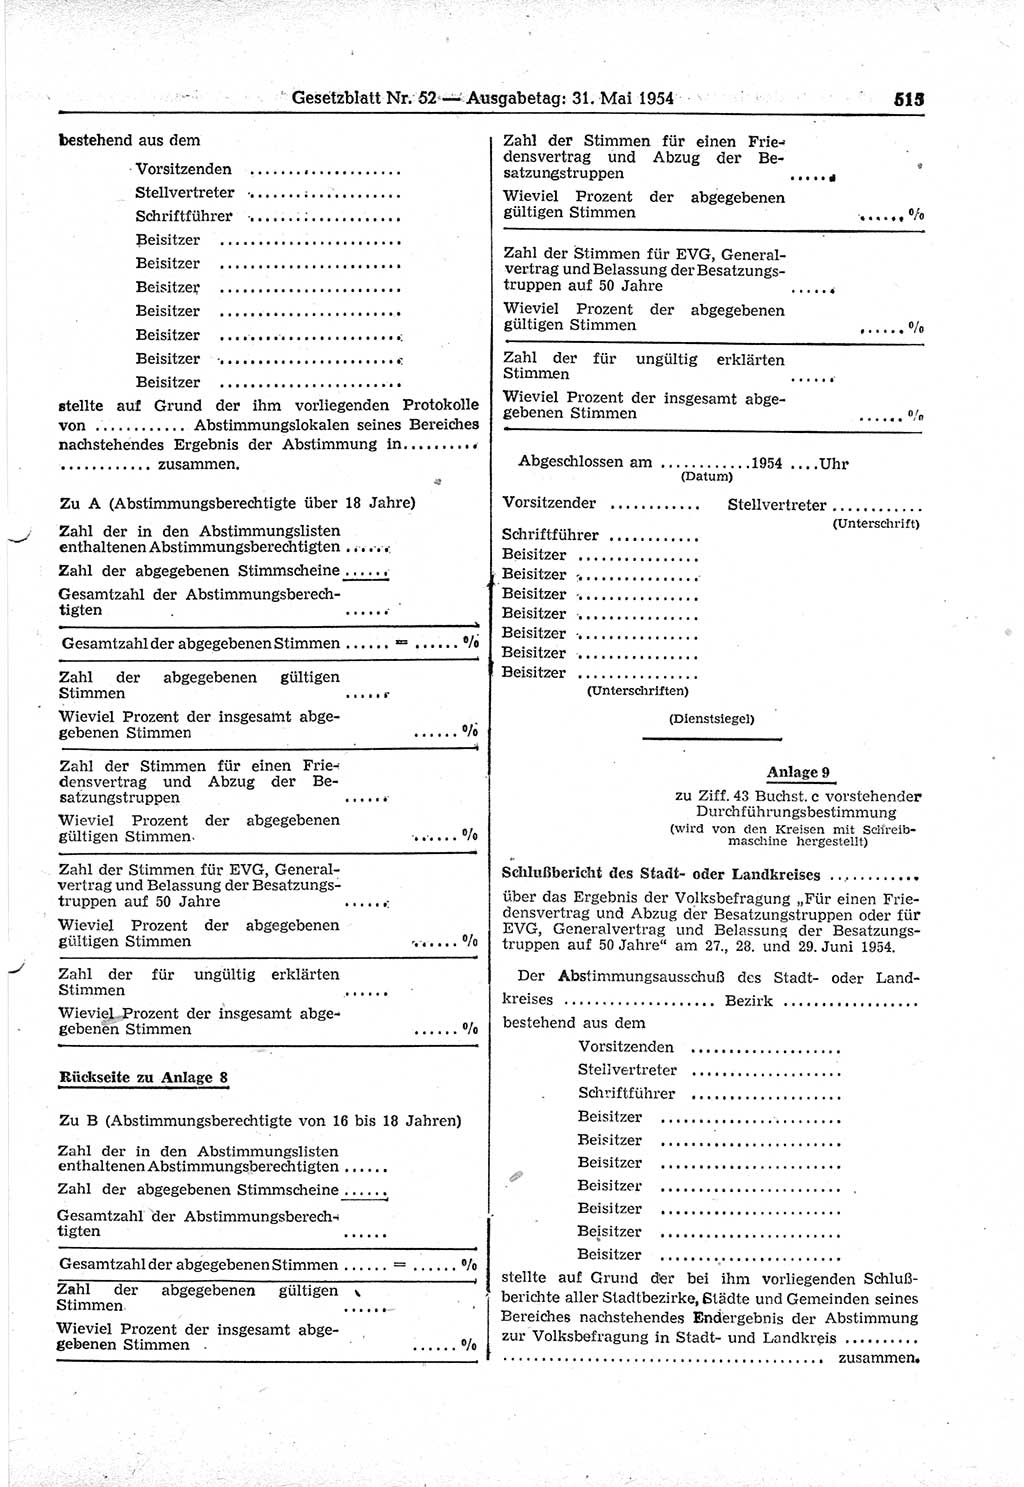 Gesetzblatt (GBl.) der Deutschen Demokratischen Republik (DDR) 1954, Seite 515 (GBl. DDR 1954, S. 515)